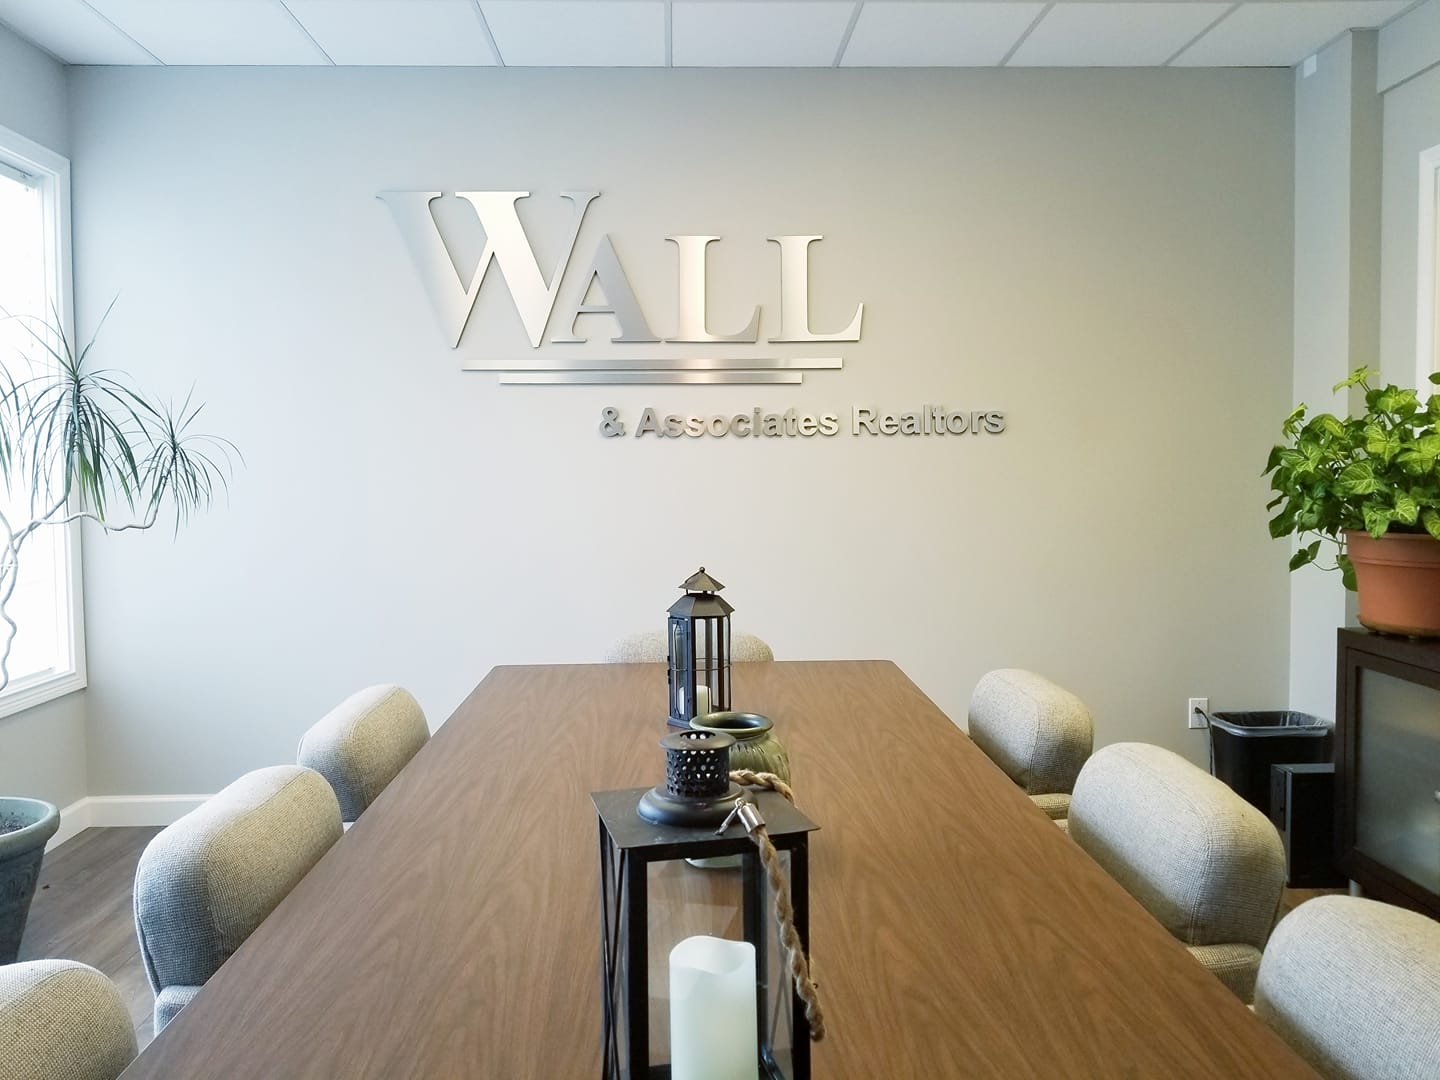 Wall & Associates Office